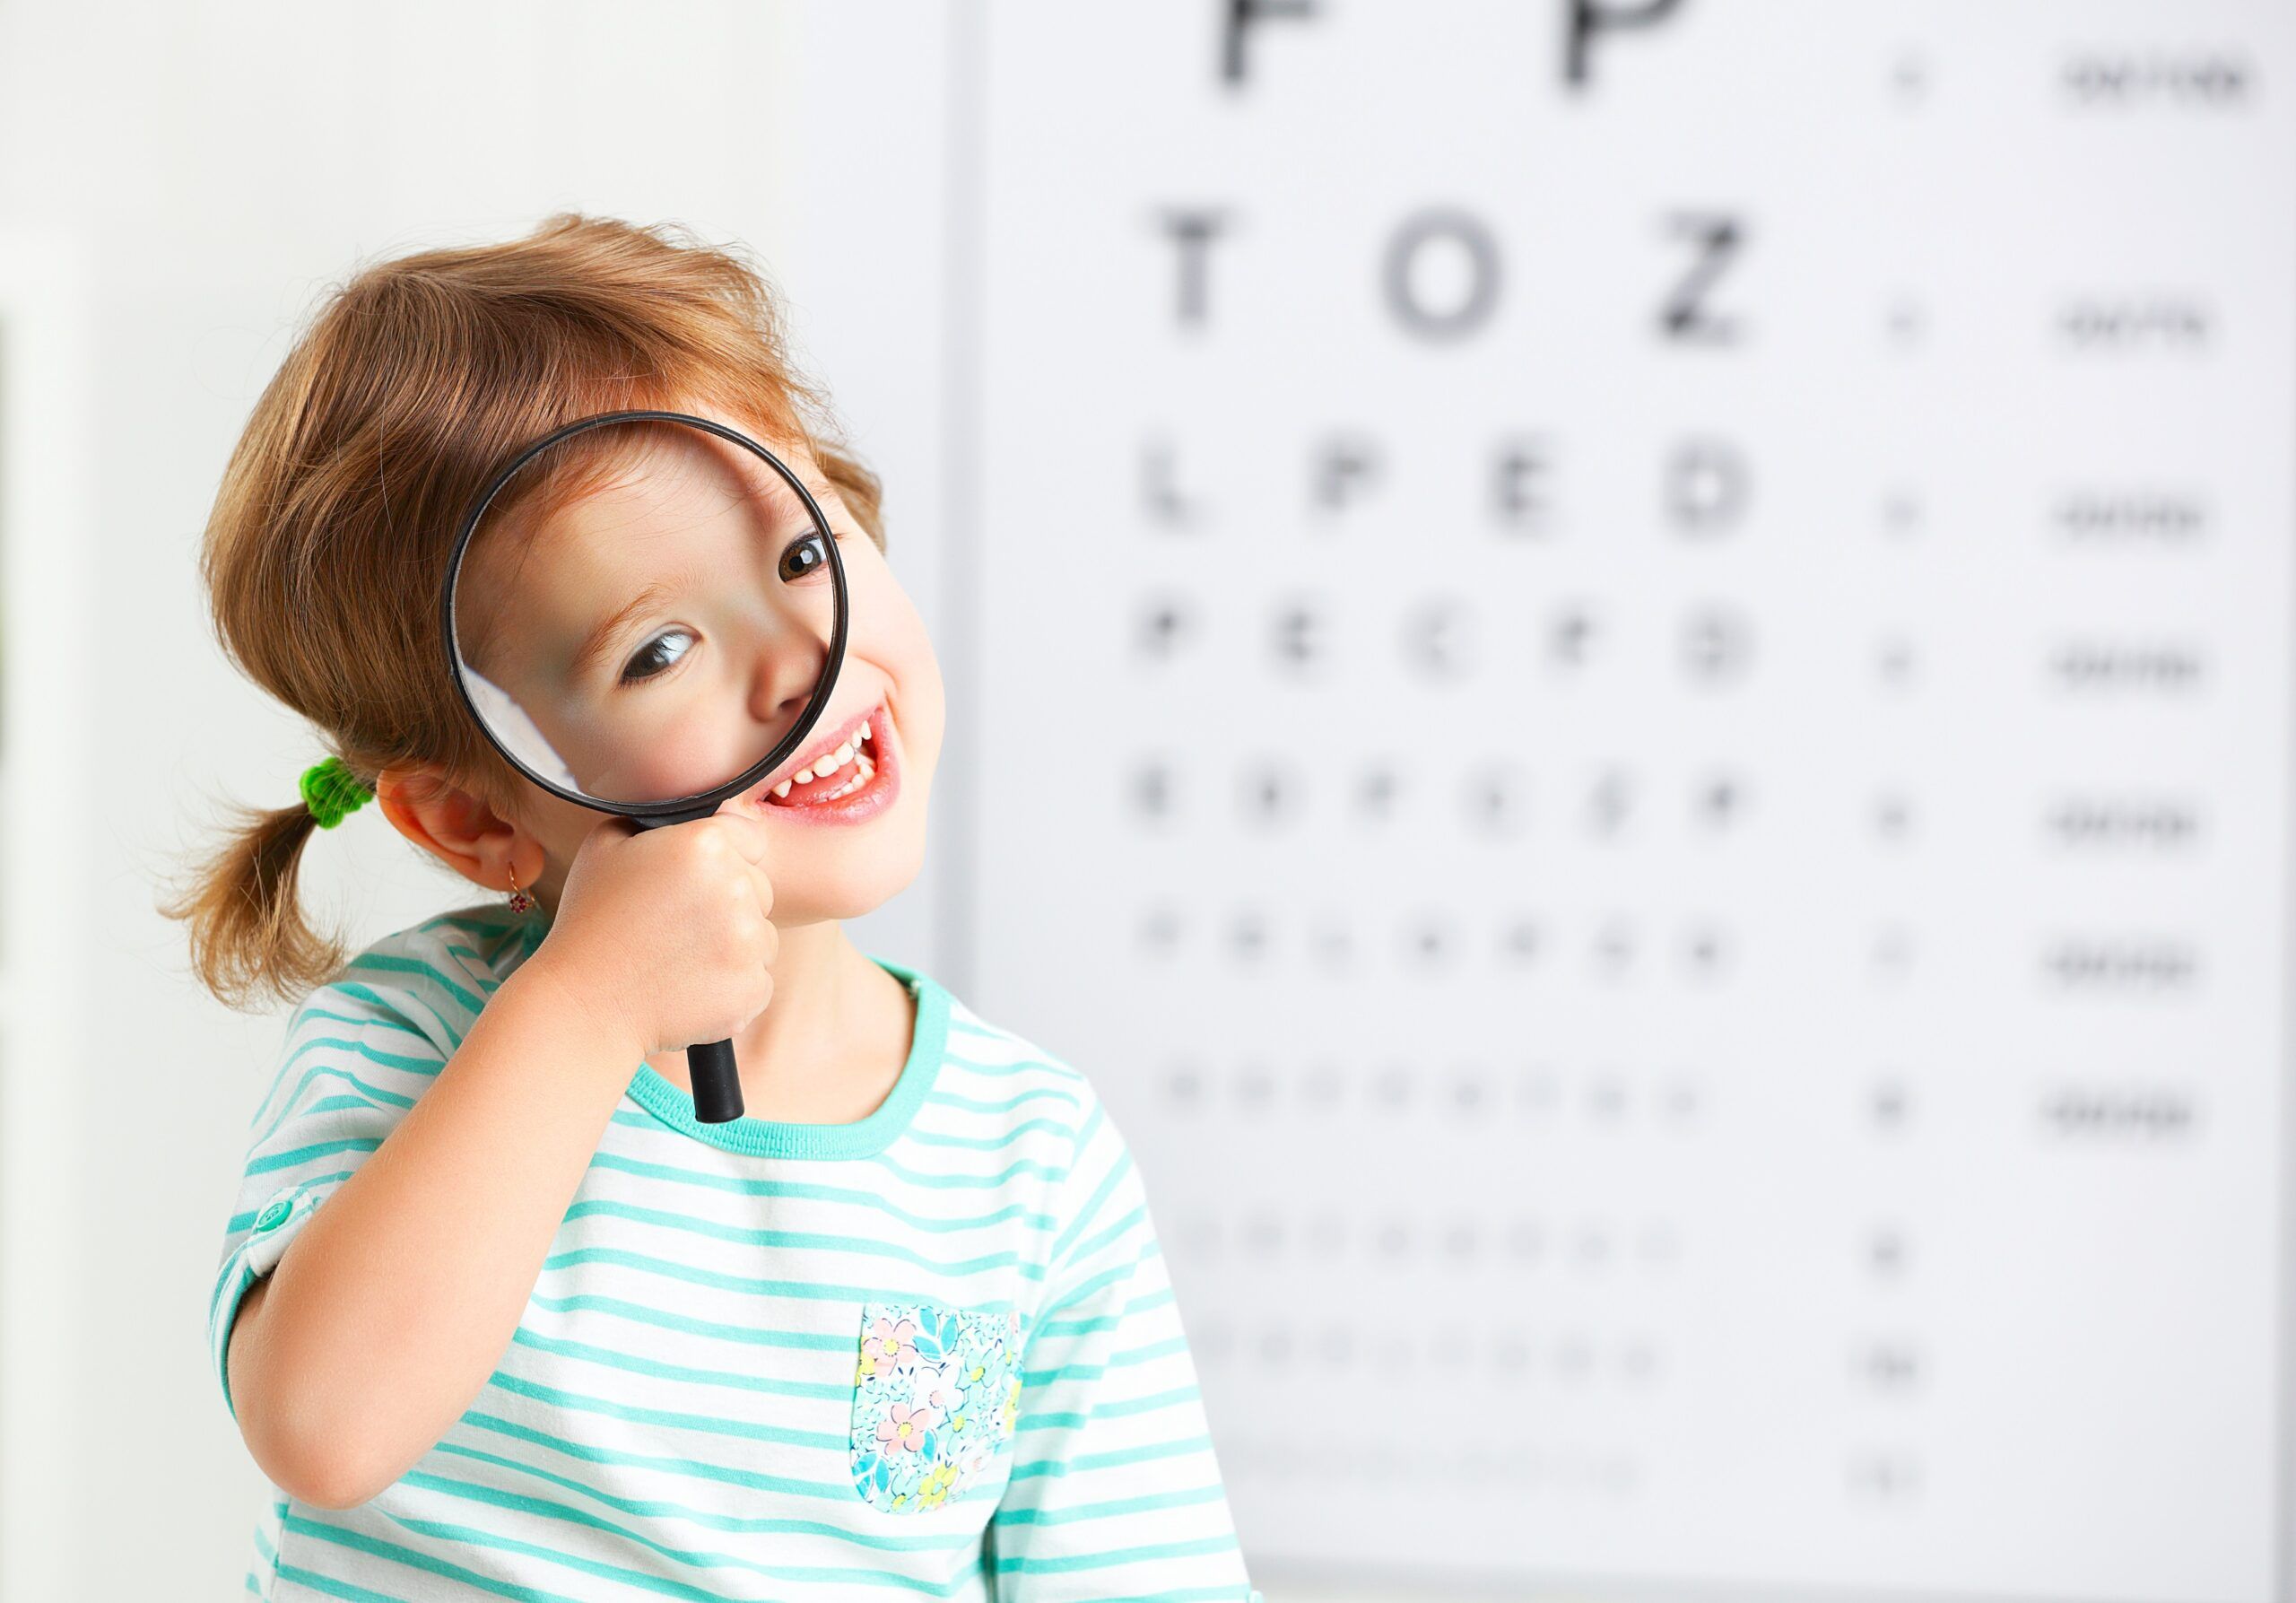 Augenarztpraxis Winti - Augenarzt für Erwachsene und Kinder . Dr. med. Murat Yildirim - Marktgasse 78 - Winterthur - Telefon 052 212 26 29